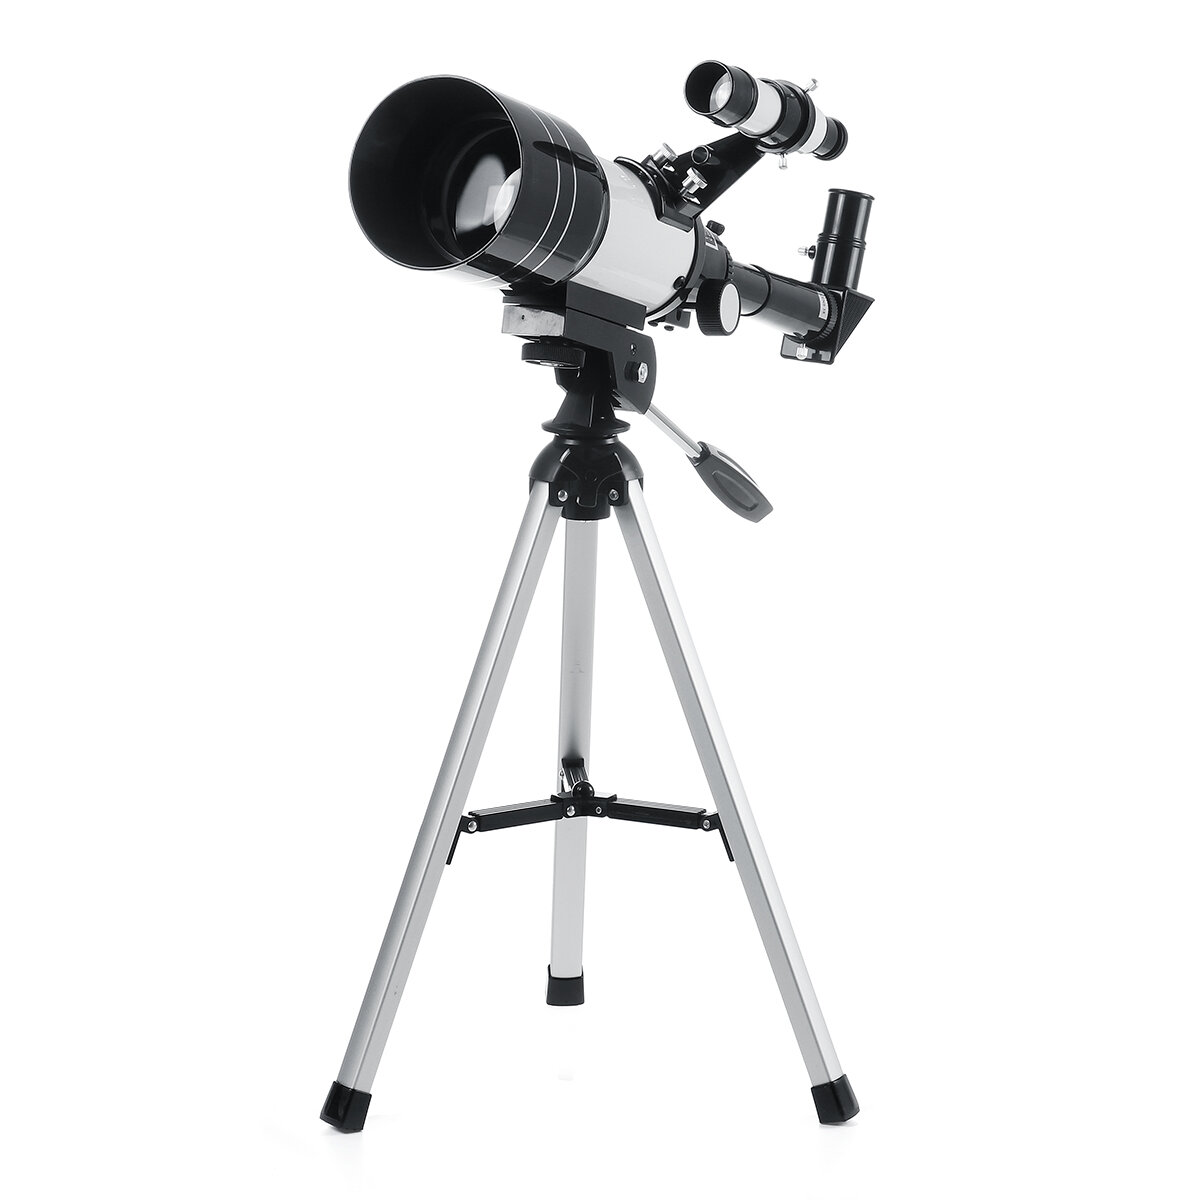 Professzionális 150x70mm-es asztrofotó teleszkóp HD látványvilággal az űr és a Hold megtekintéséhez. Ideális kültéri és otthoni használatra.